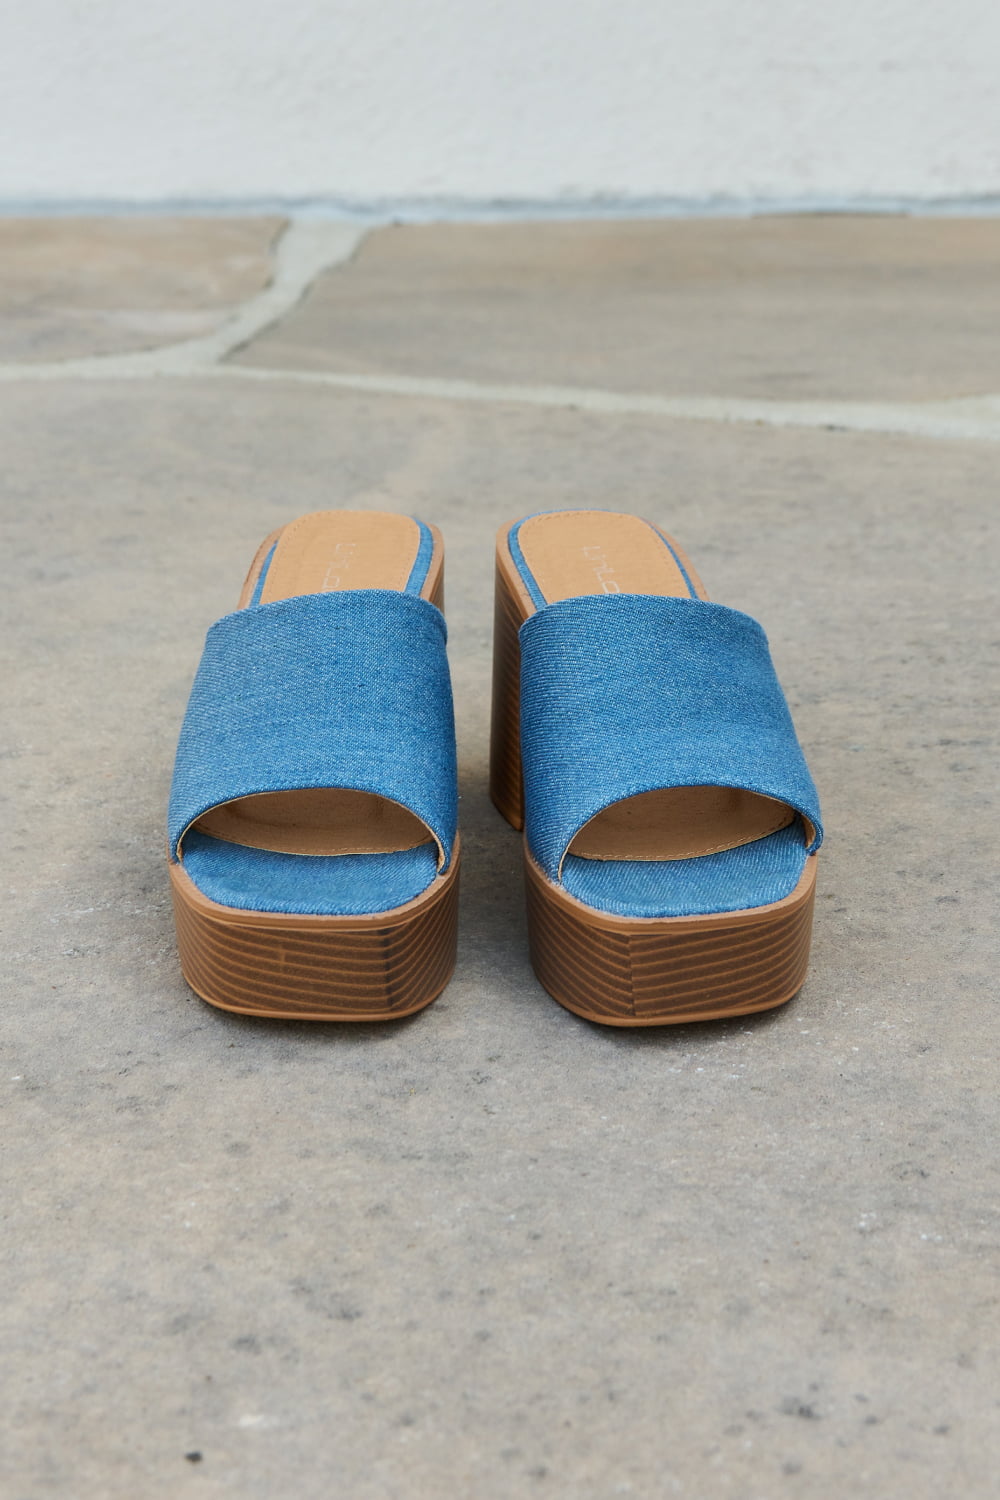 Weeboo Essential Platform Heel Sandals - Guy Christopher 